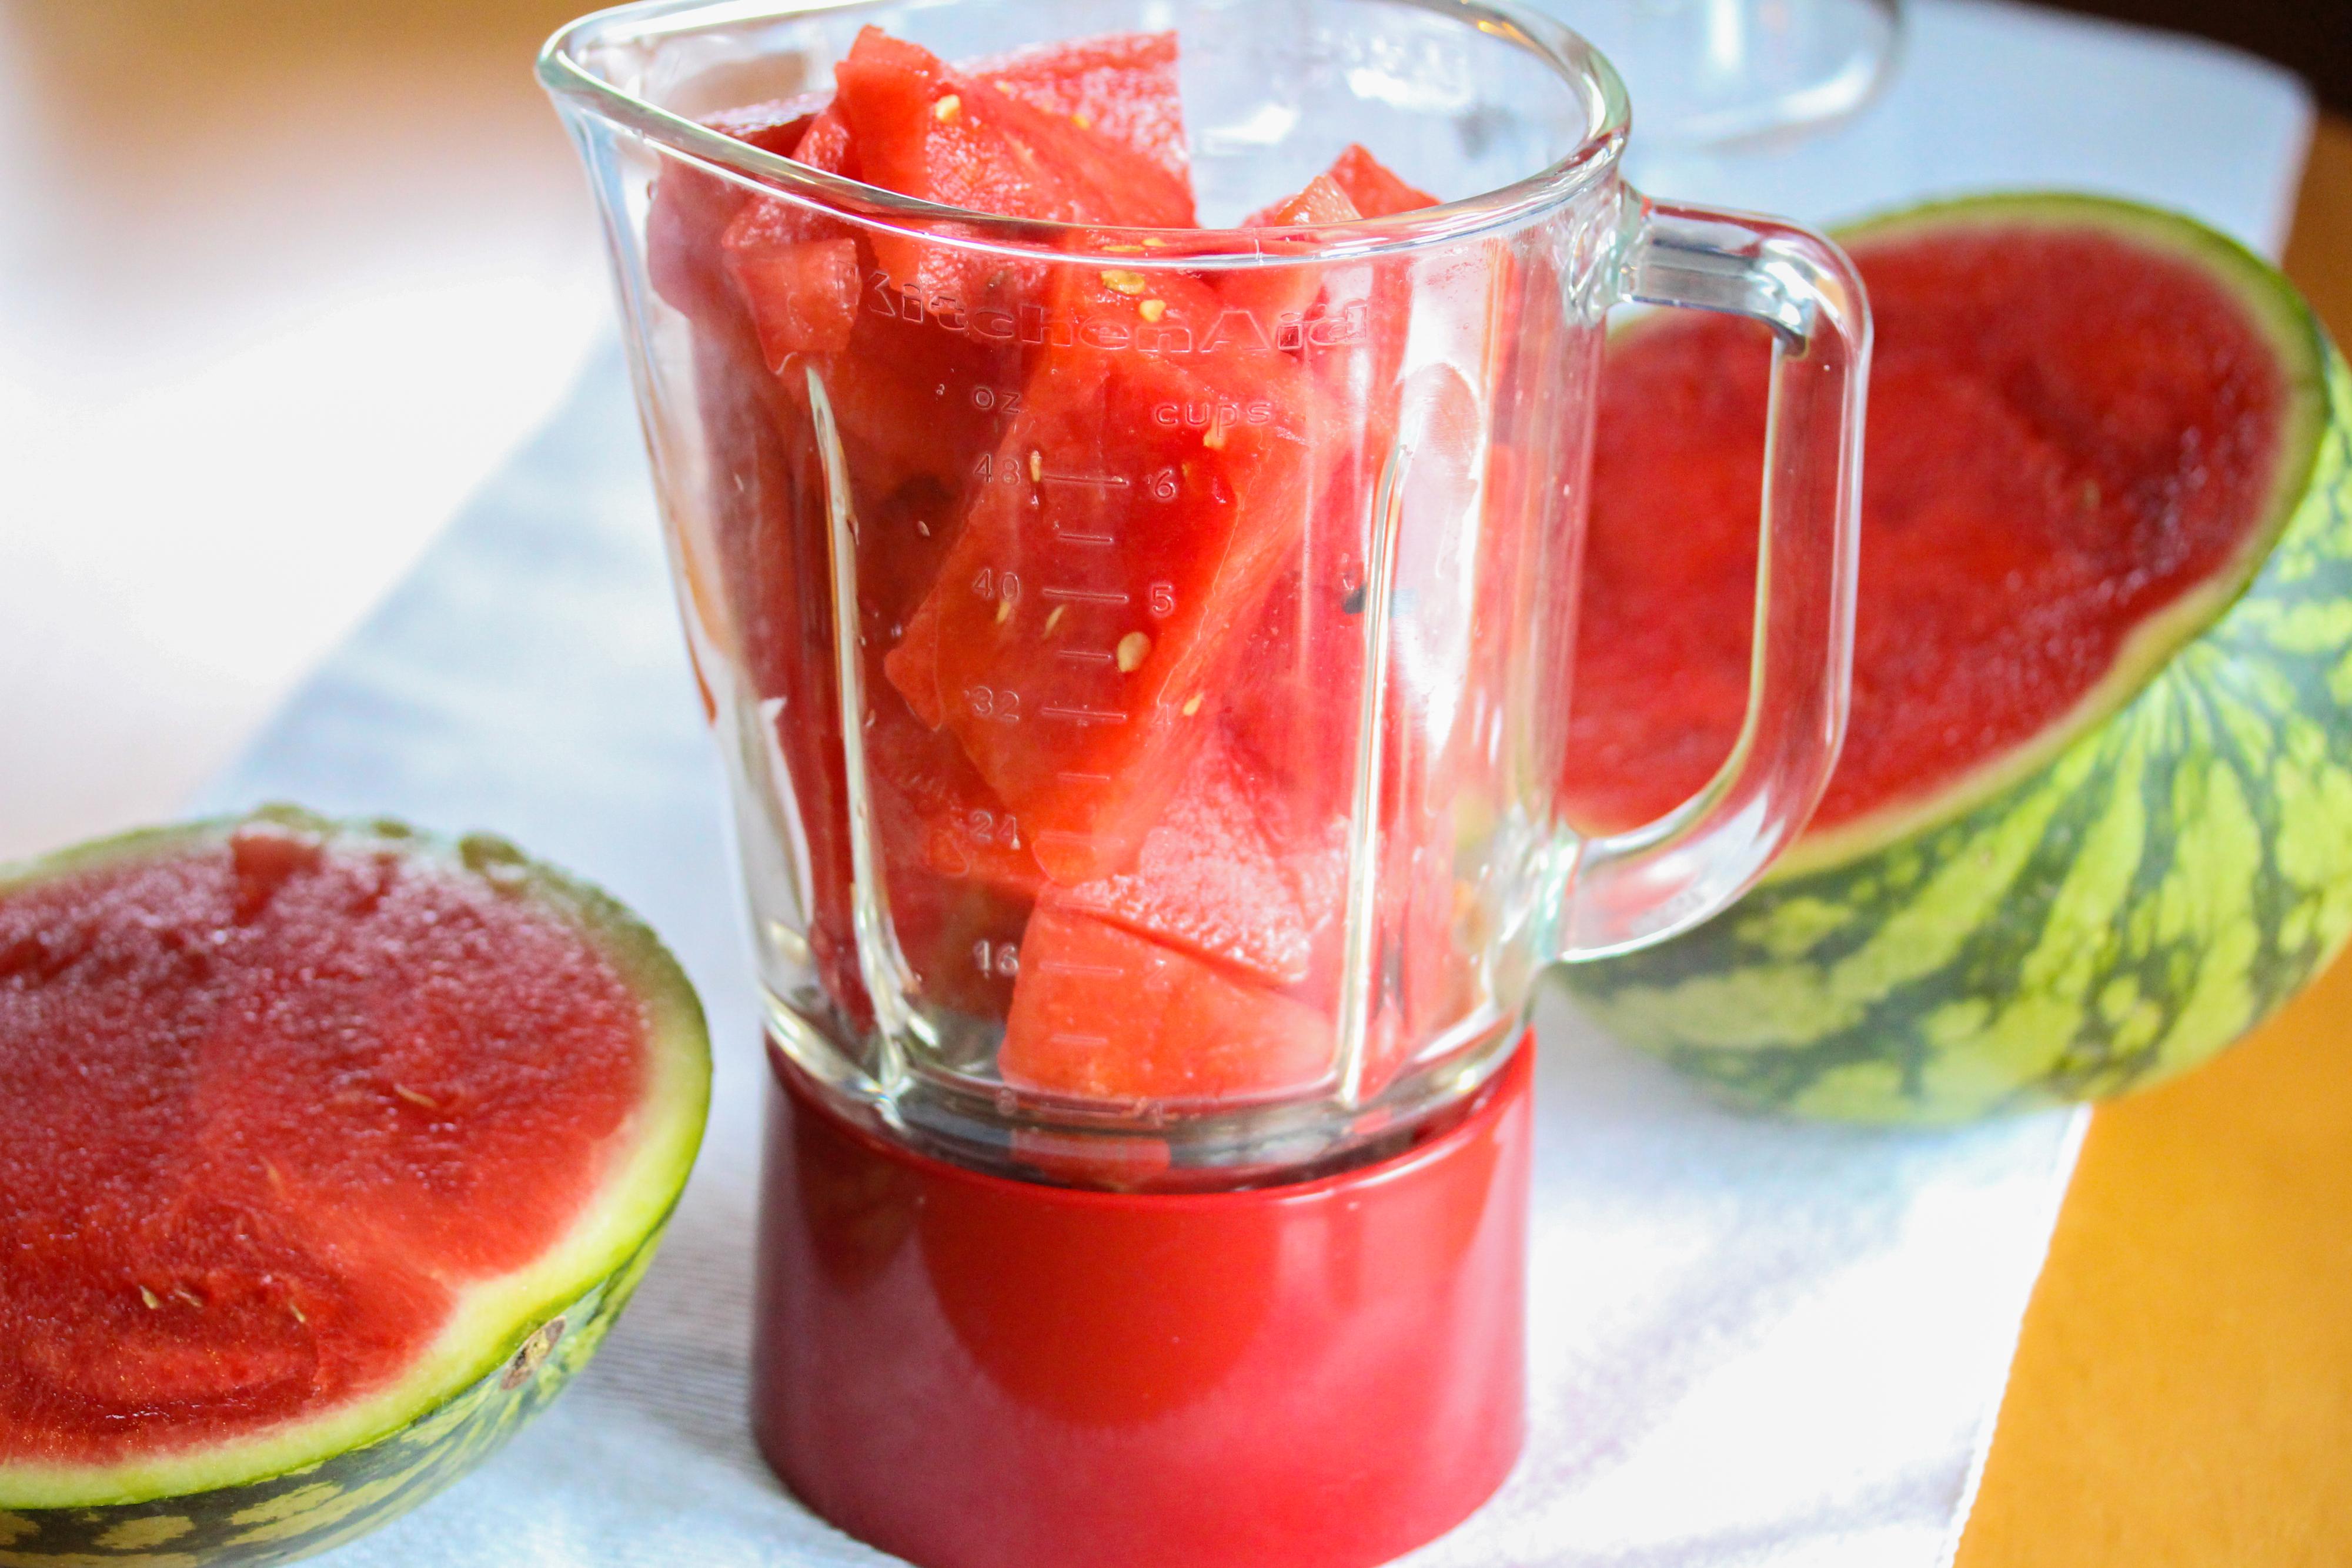 Mål opp 2 dl vannmelonsaft til og ha i en liten kjele med sukkeret. Varm opp blandingen og la den småkoke i noen minutter. Ta kjelen av platen og sett kjelen med vannmelonsirupen i kjøleskapet til dagen etter.